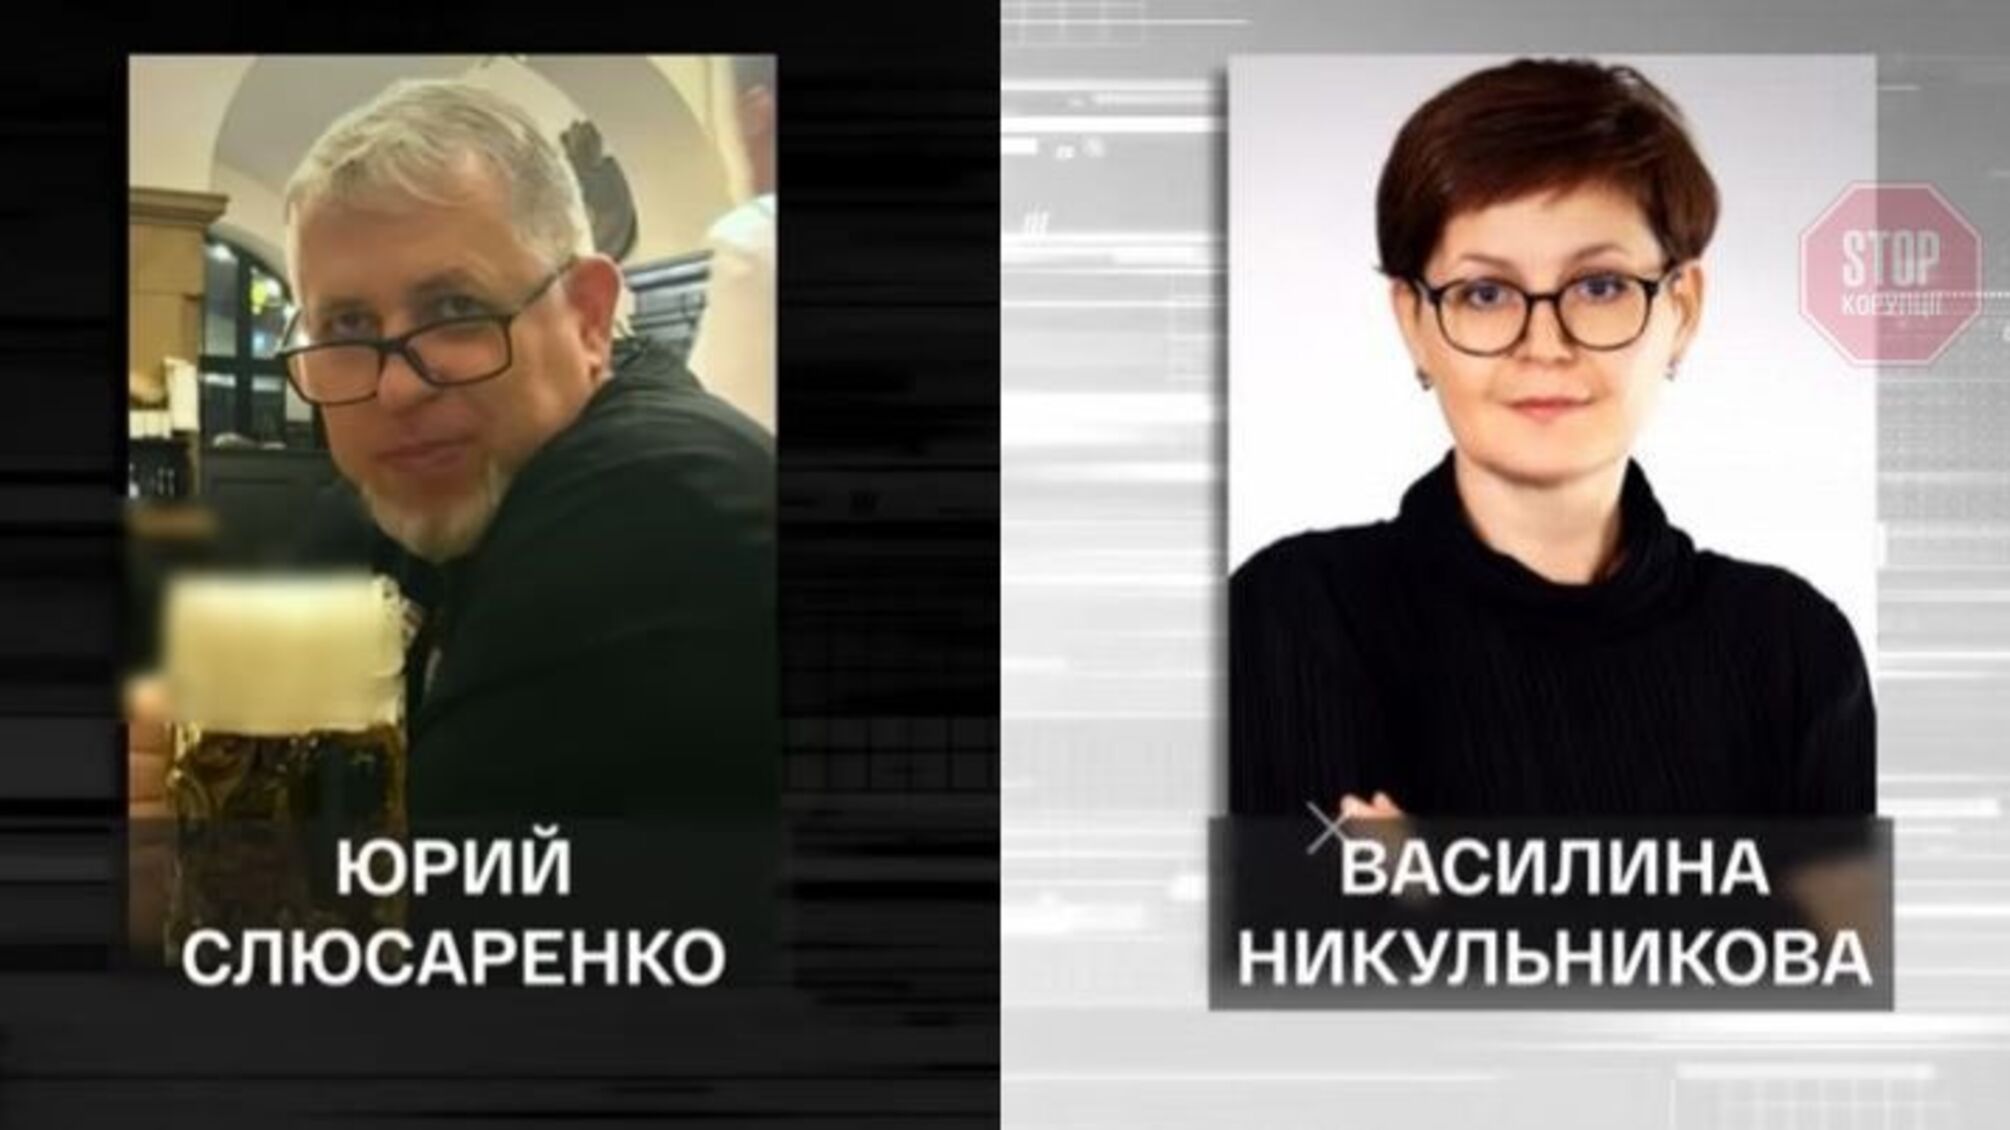 Мужа криворожской экспрокурорки Никульниковой хотят внести в Реестр коррупционеров